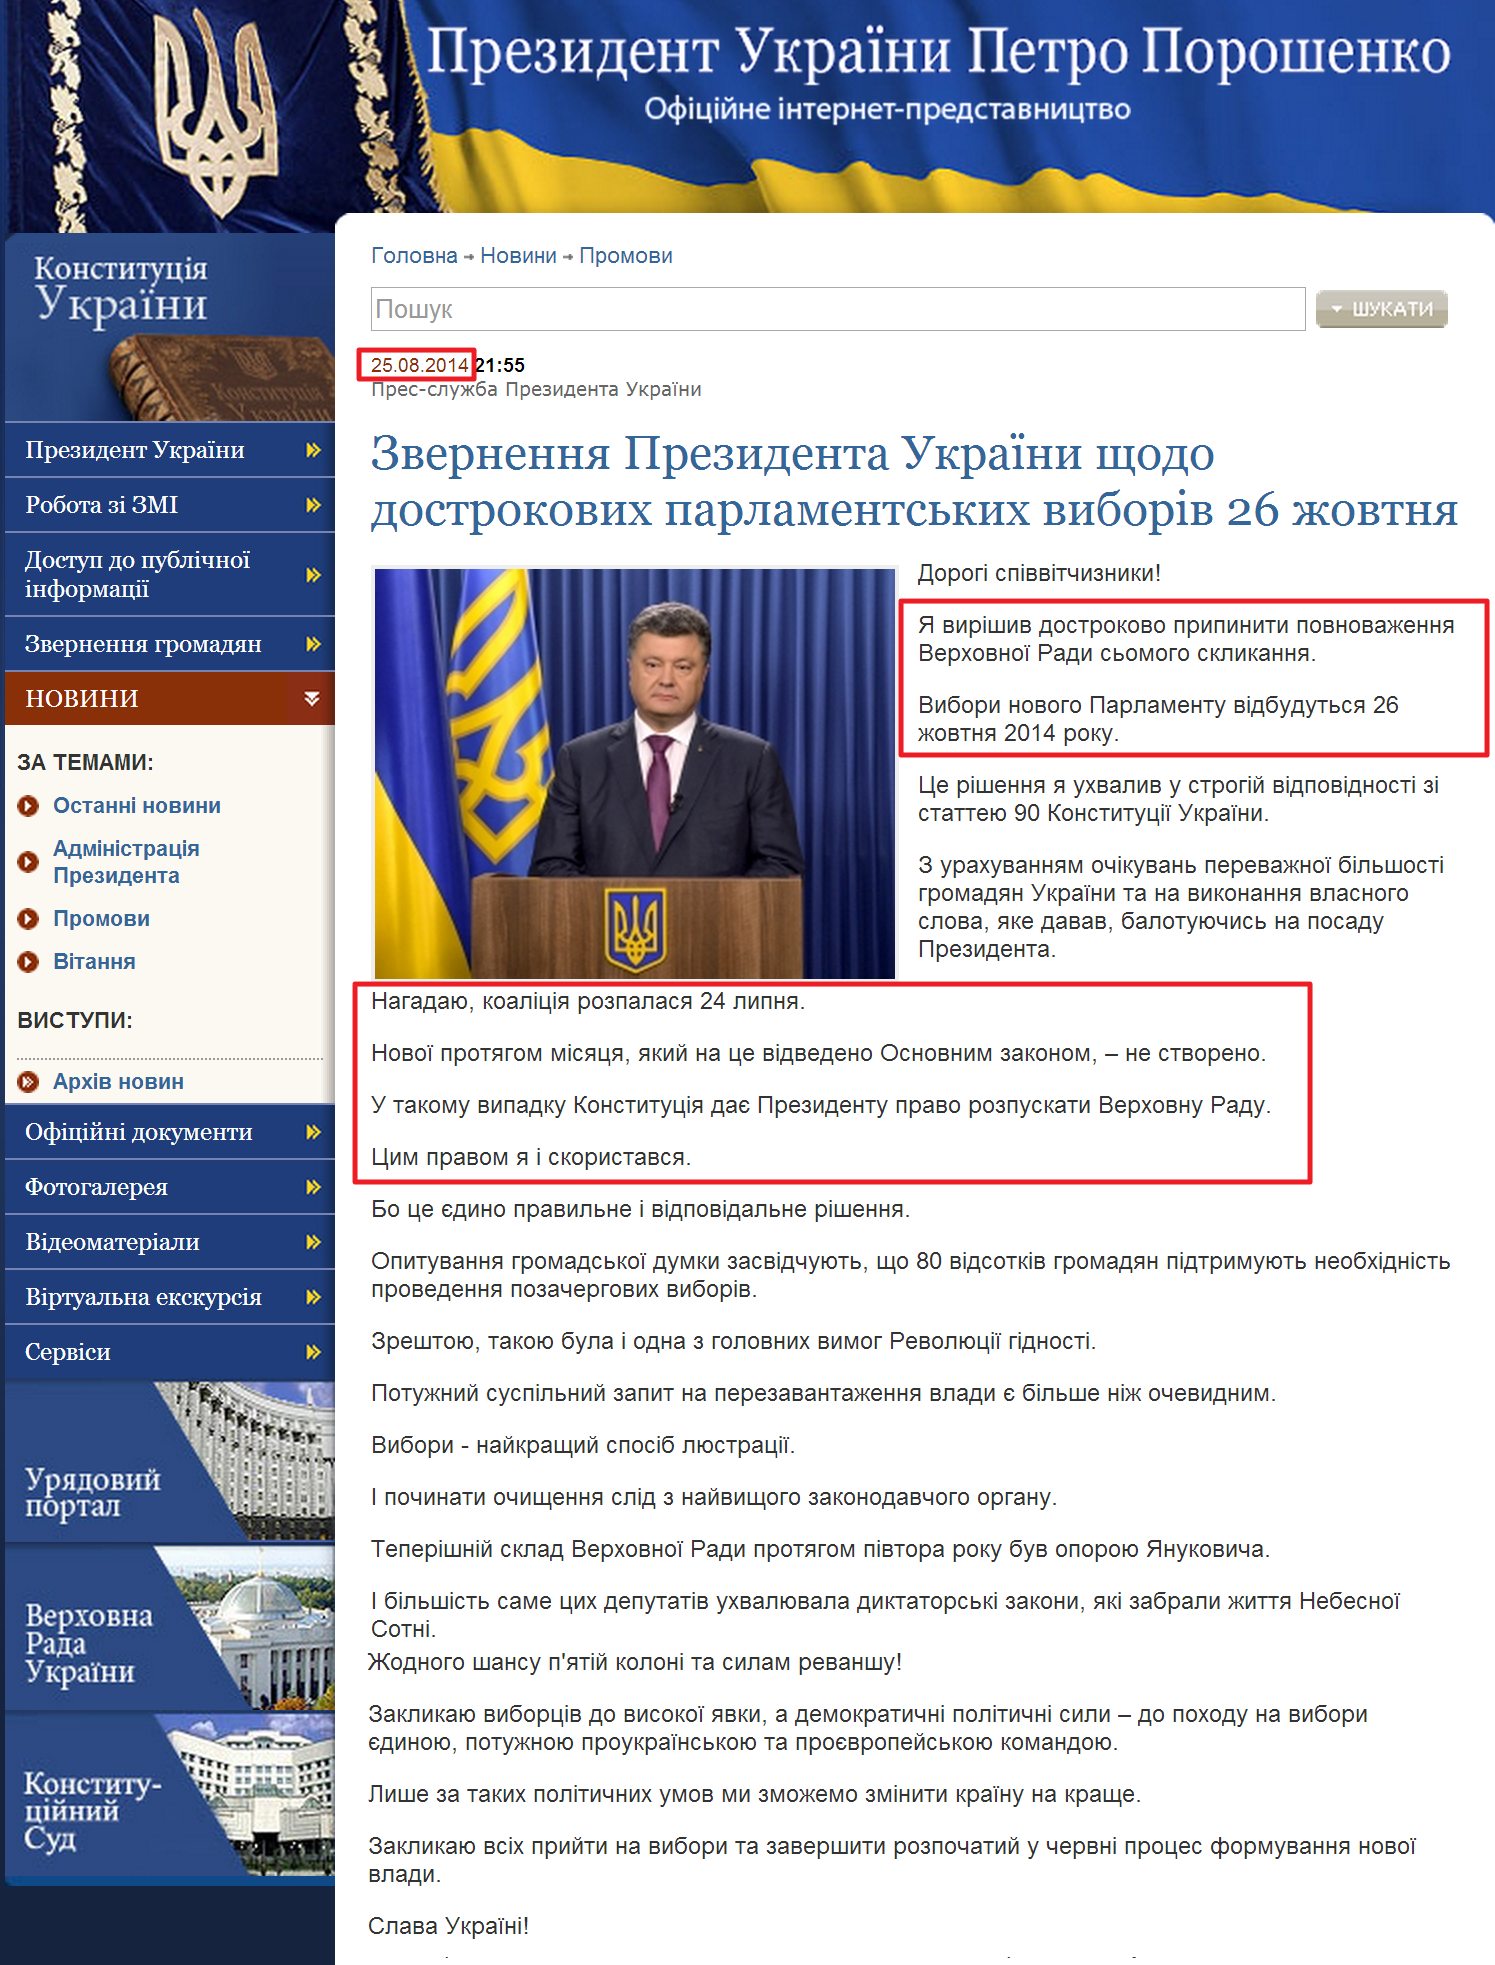 http://www.president.gov.ua/news/31081.html